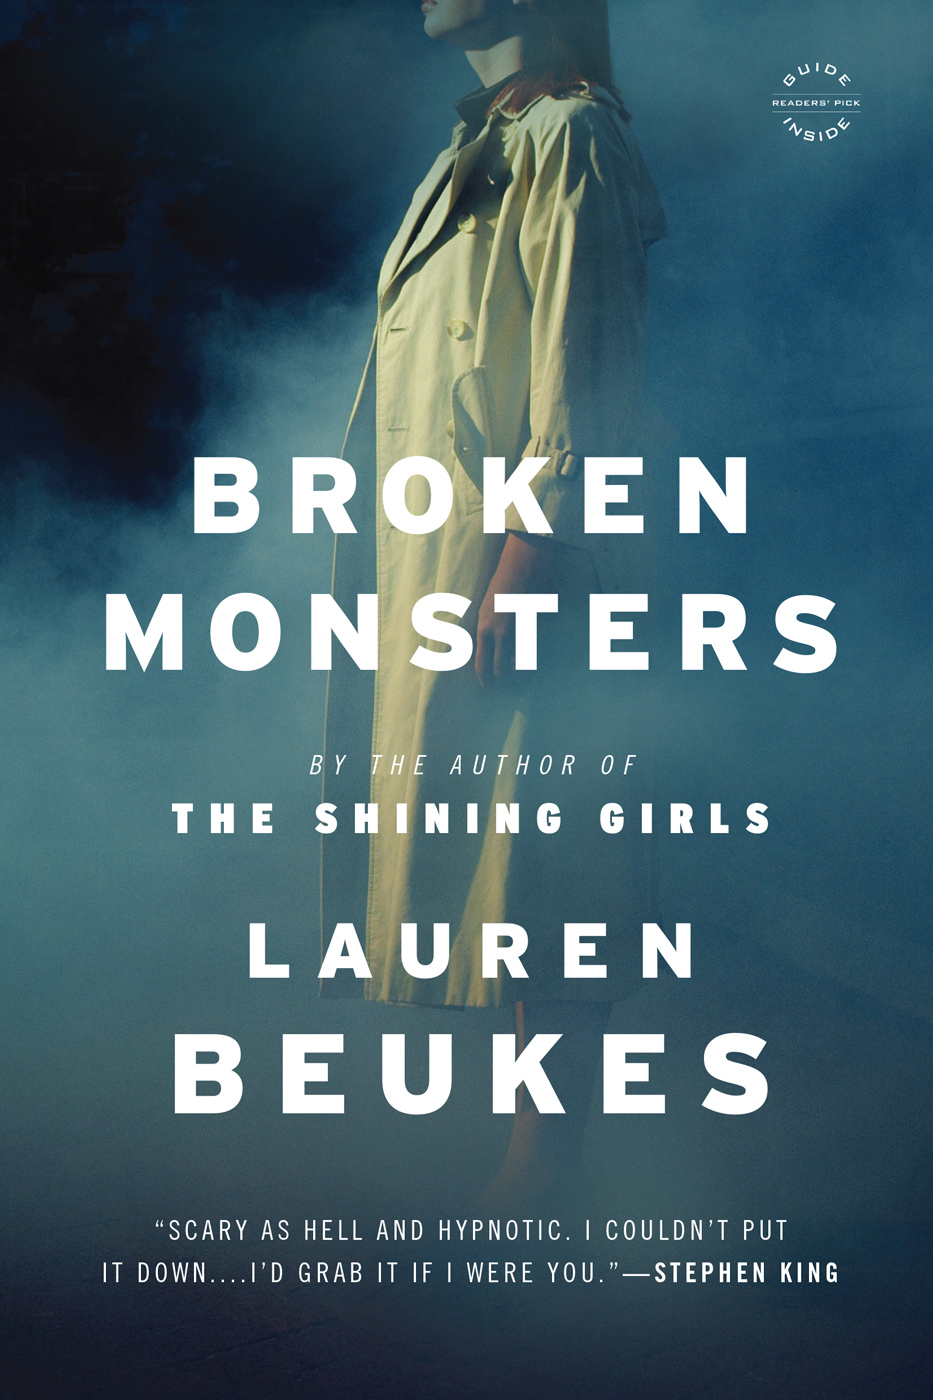 Broken Monsters (2014) by Lauren Beukes